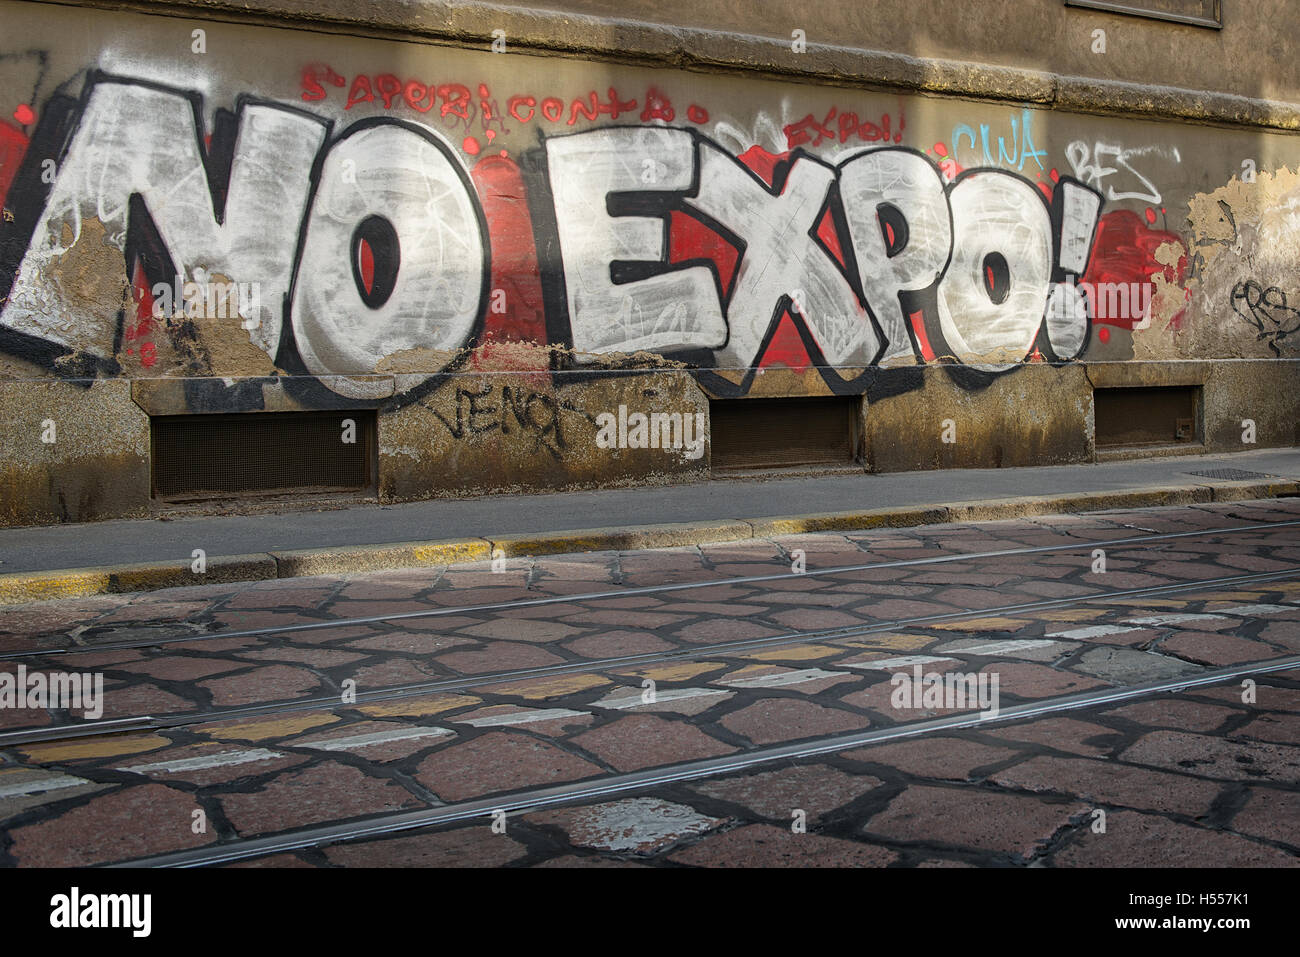 29 ottobre 2014: Corso Magenta a Milano Italia. scritti sui muri protesta expo 2015 Foto Stock